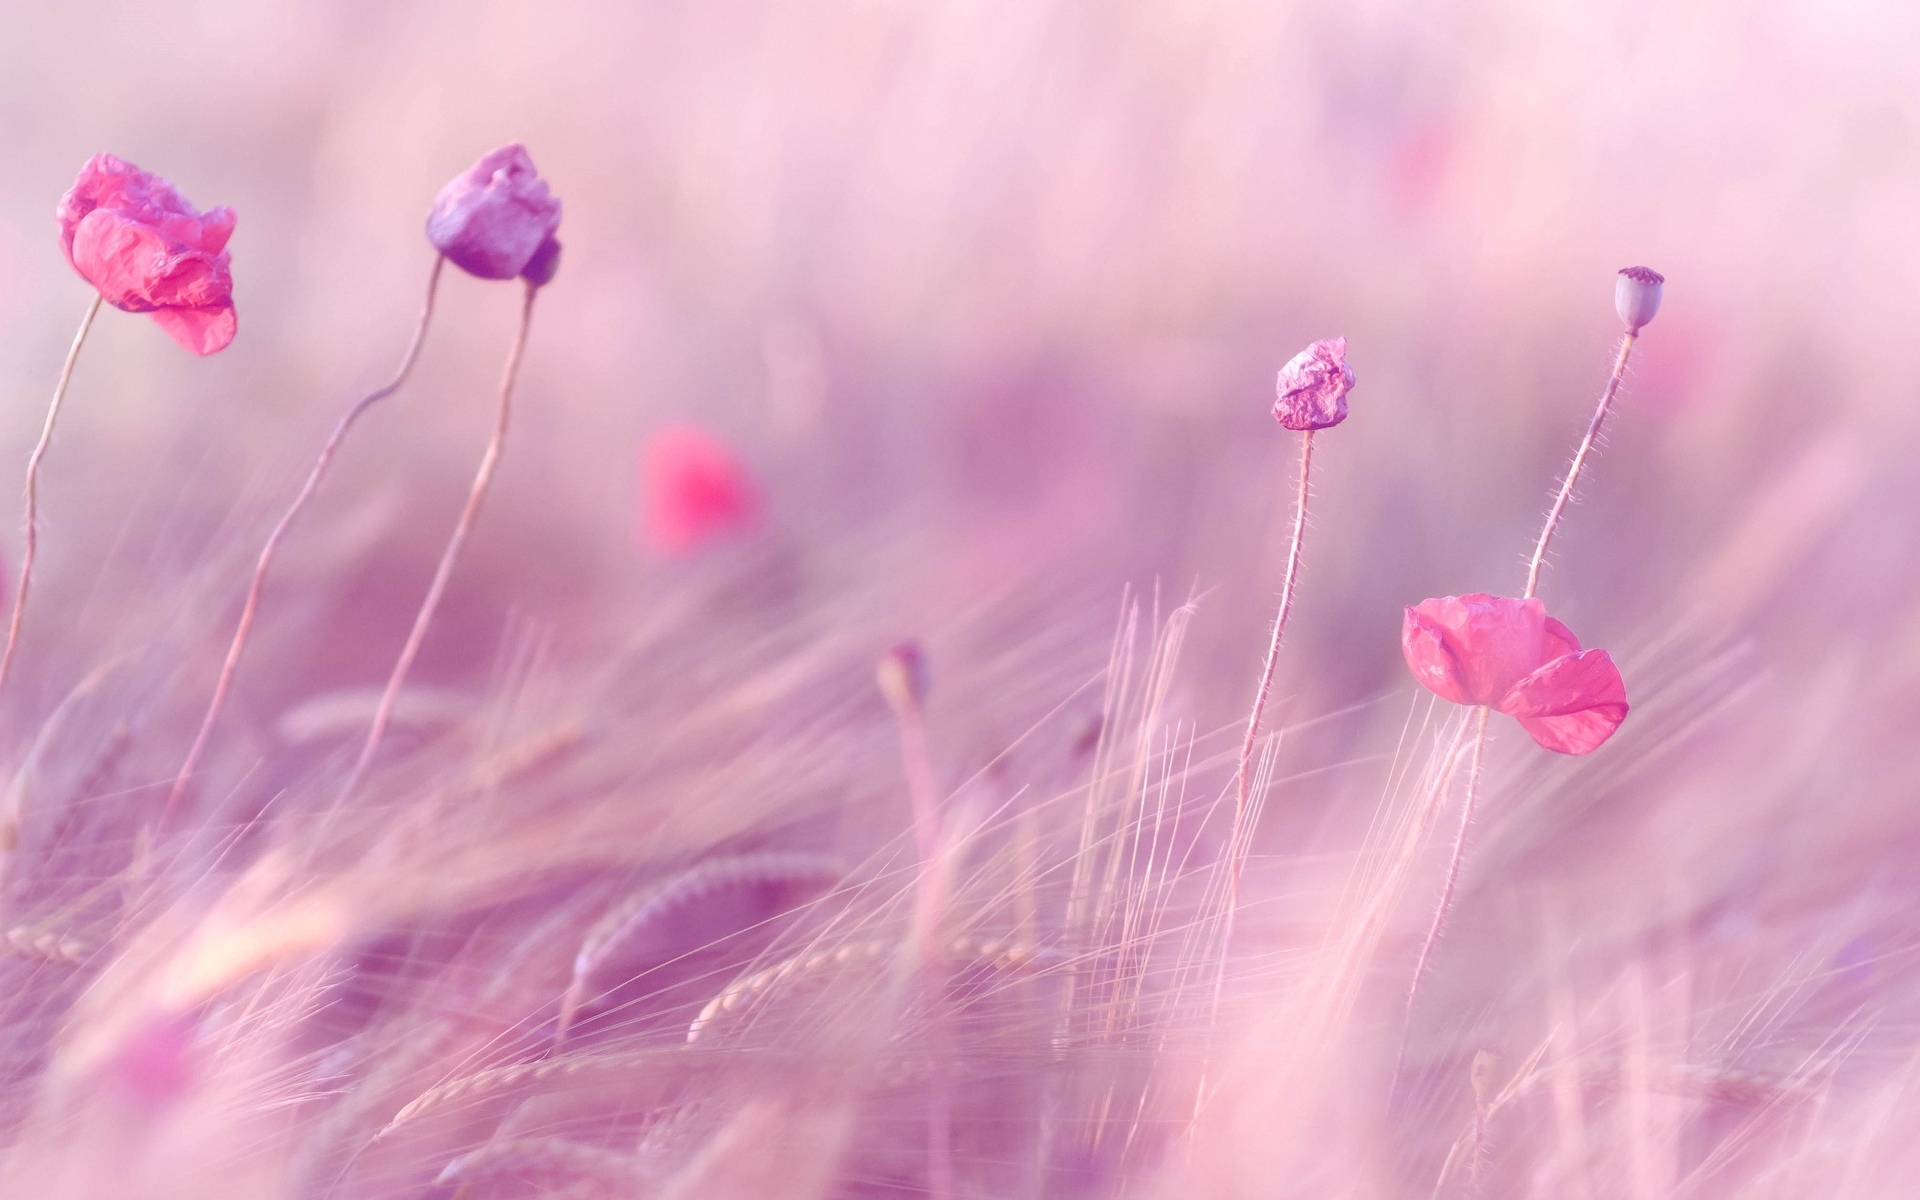 Bạn yêu thích màu hồng tím đầy quyến rũ và gợi cảm? Hãy xem ngay hình nền hồng tím đầy sức sống và sinh động, giúp bạn thăng hoa tinh thần và tận hưởng những ngày đẹp tràn đầy niềm vui.